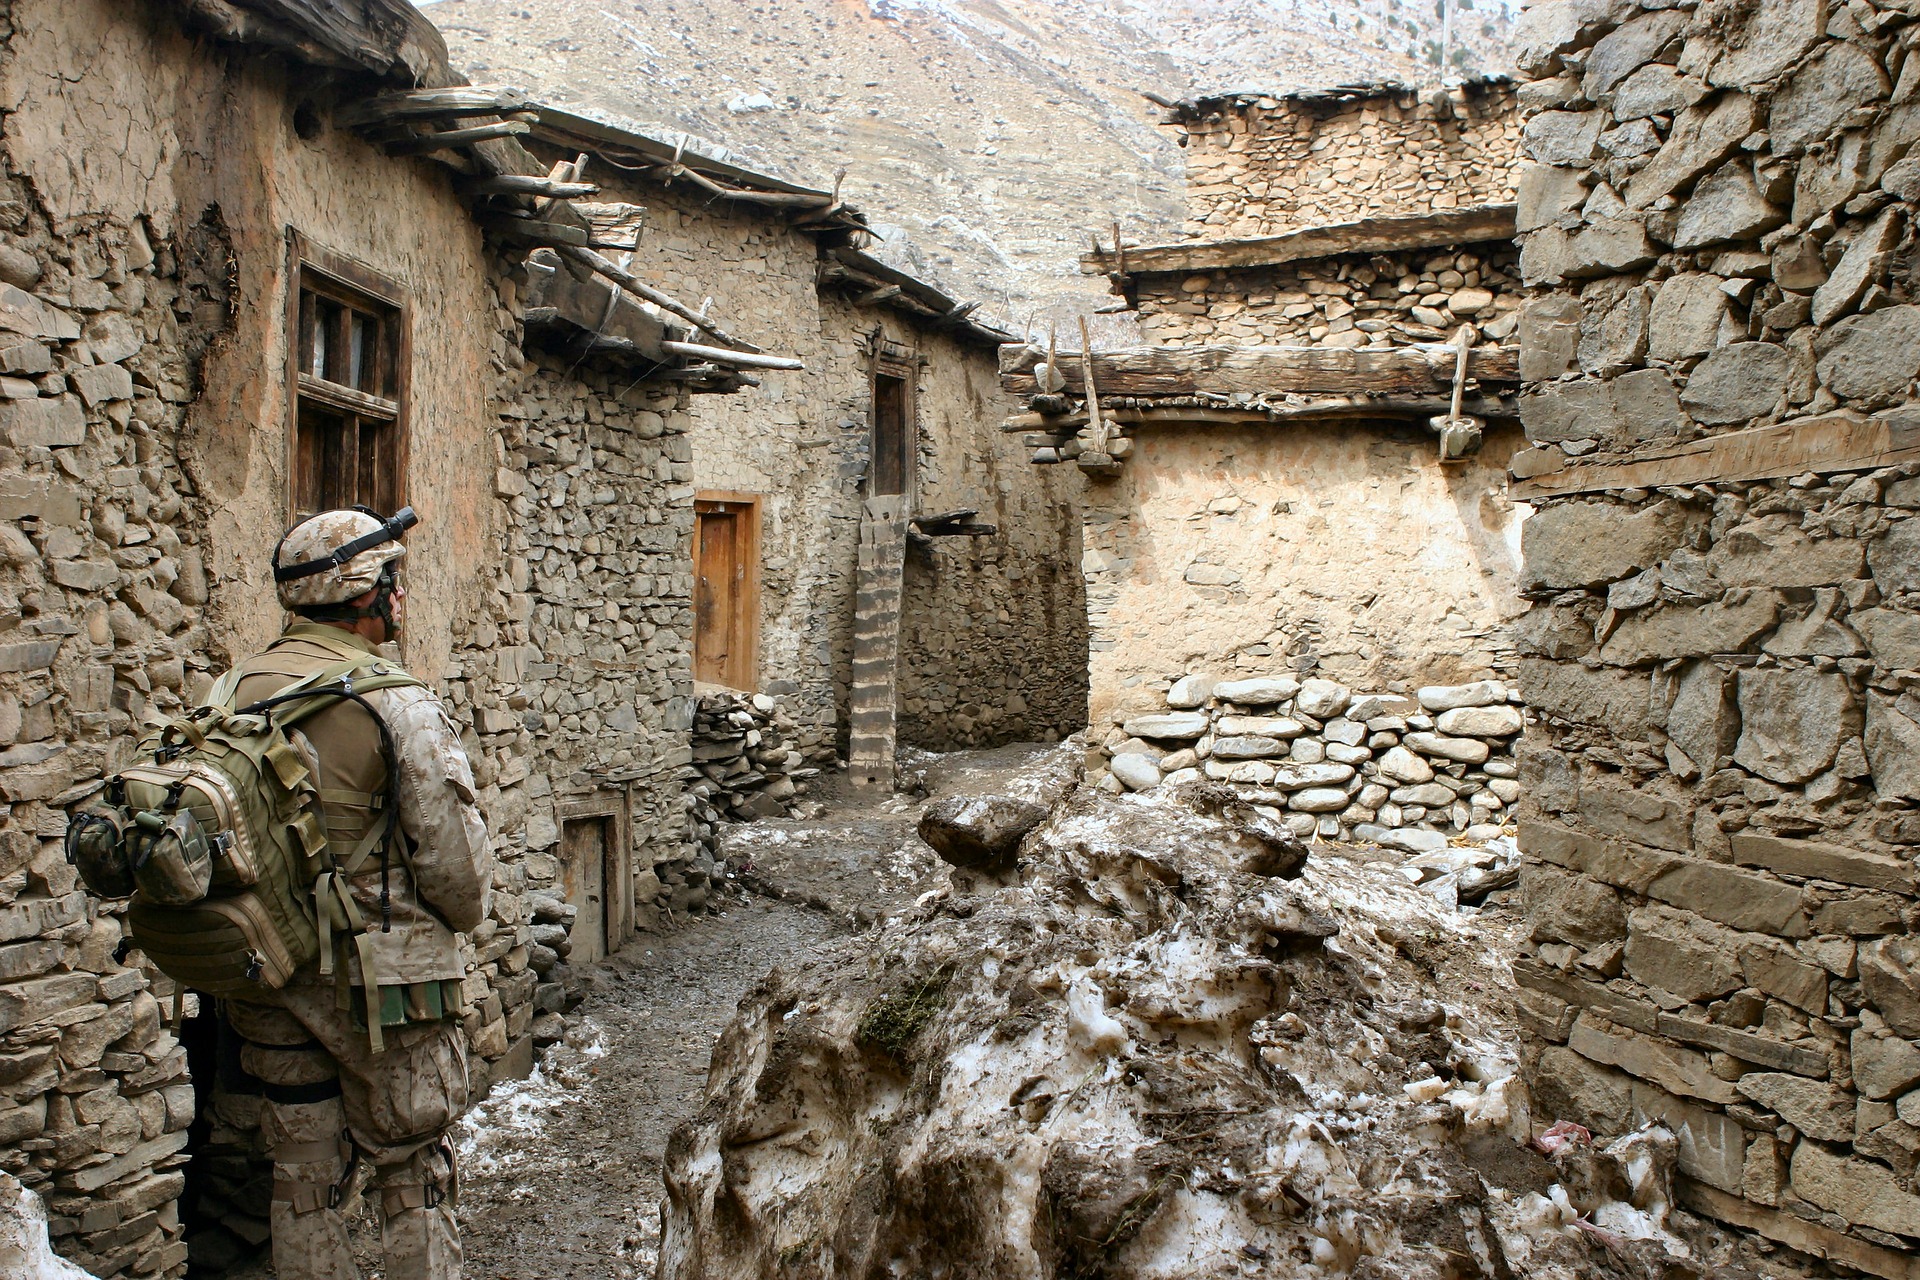 American soldier in Afghanistan